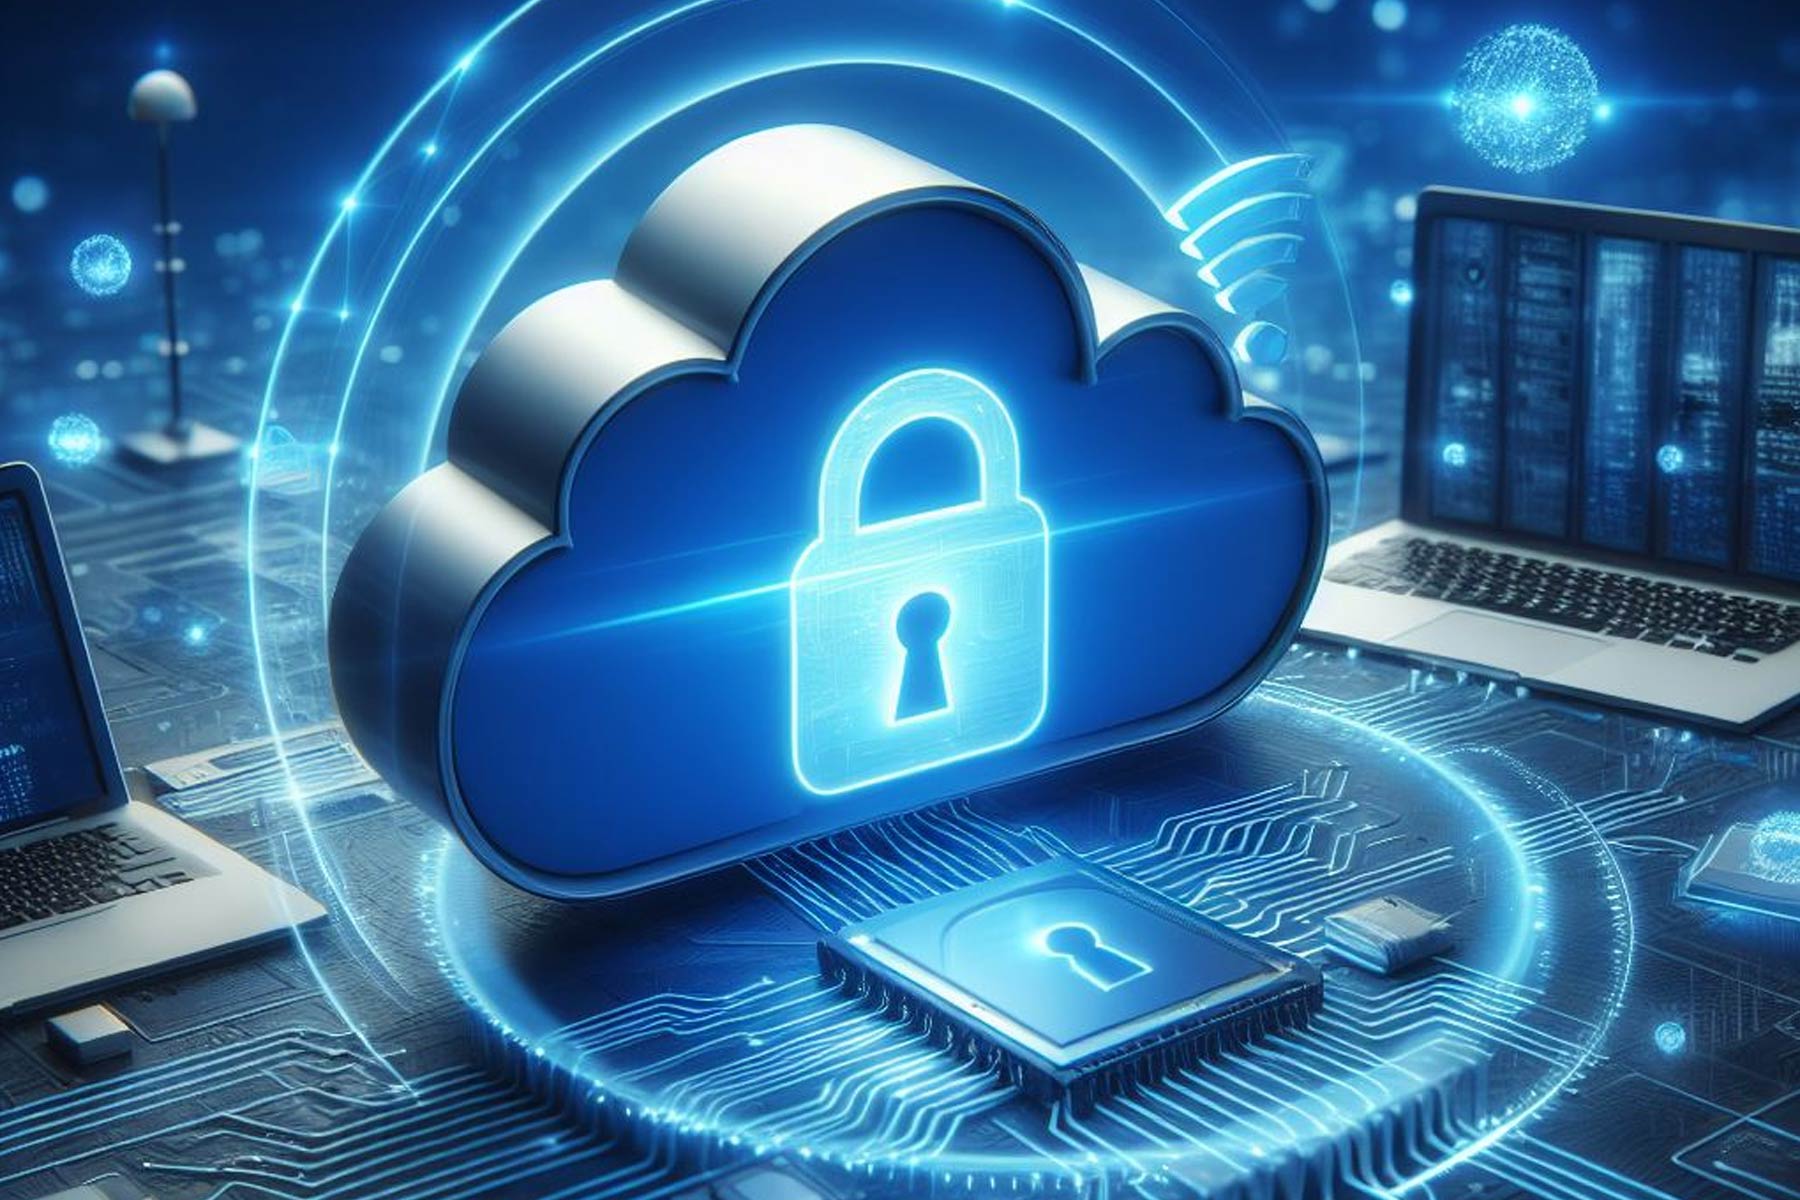 Menlo Security cloud service